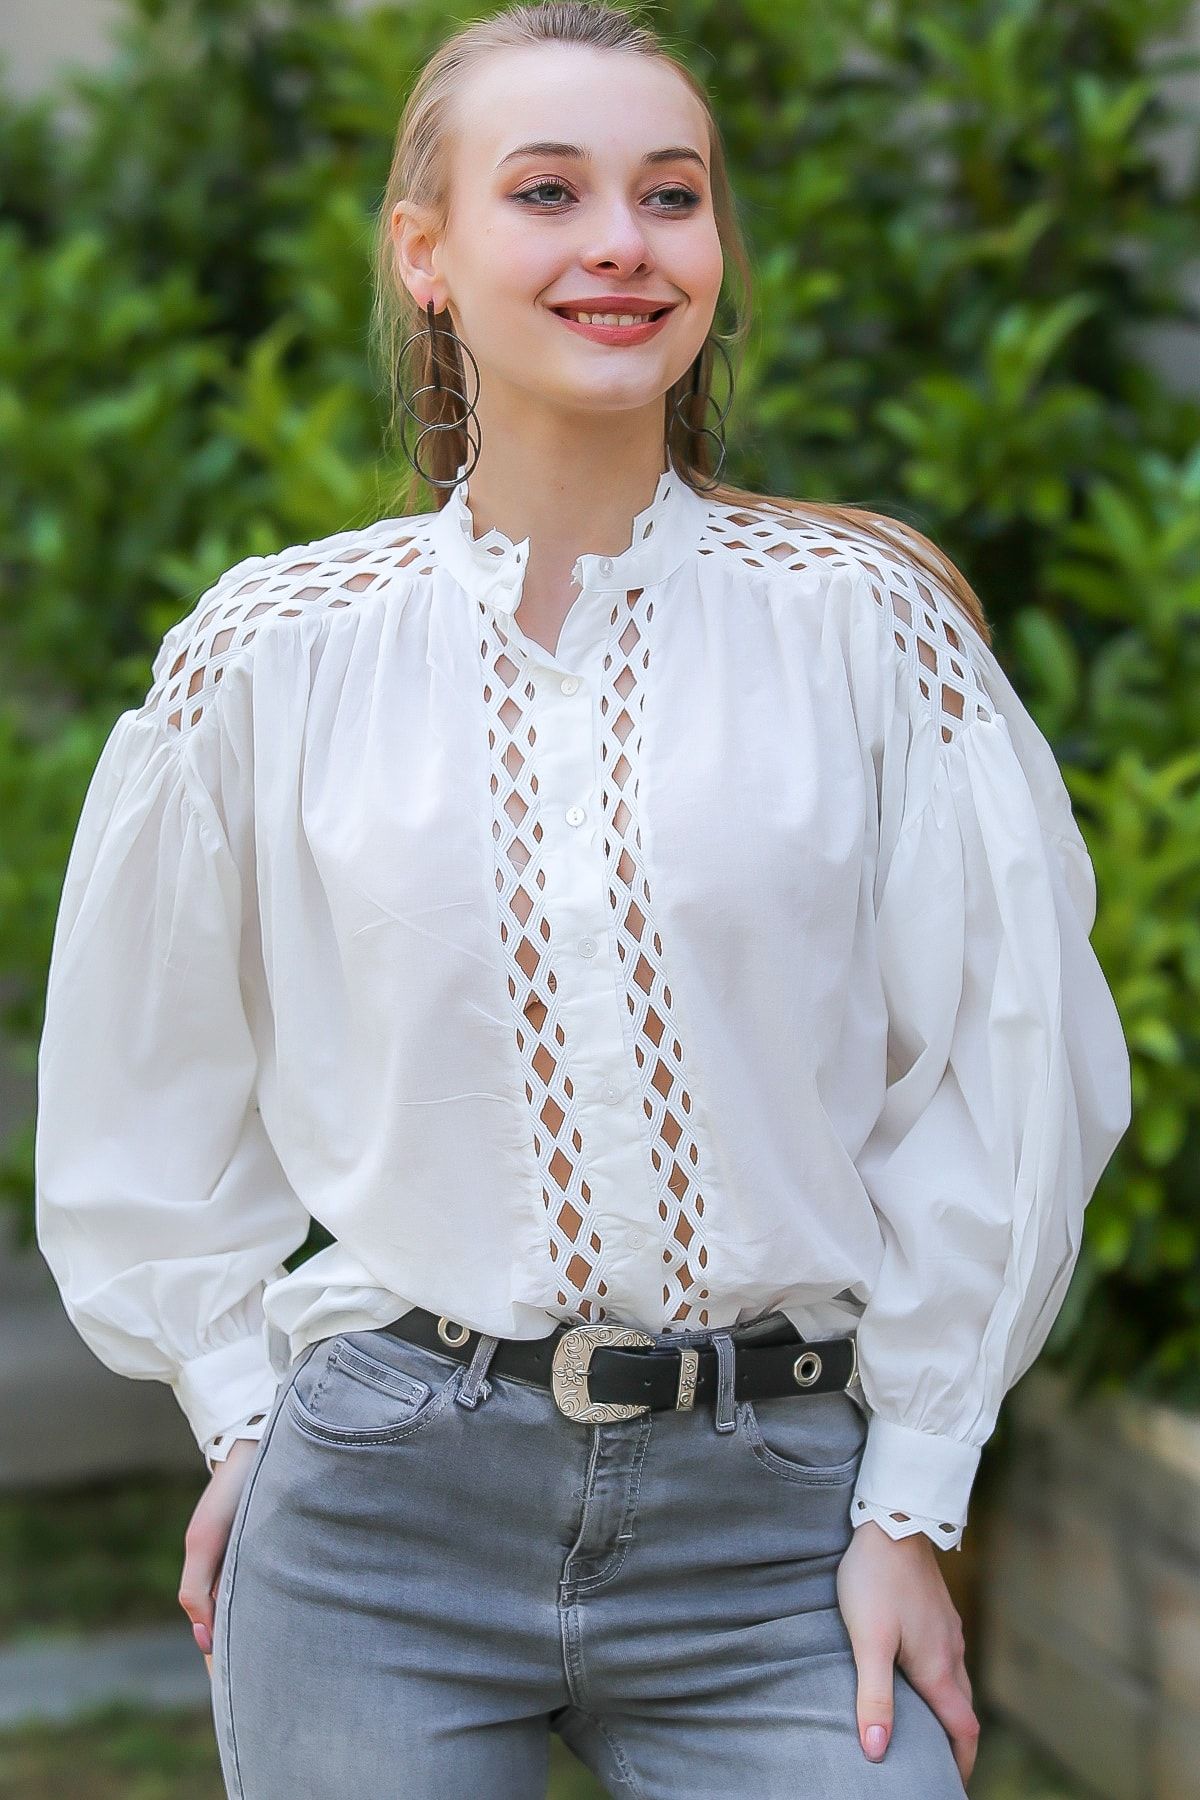 Chiccy Kadın Beyaz Vintage Yakası Ve Omuzları Ara Dantelli Balon Kol Gömlek M10010400Gm99542